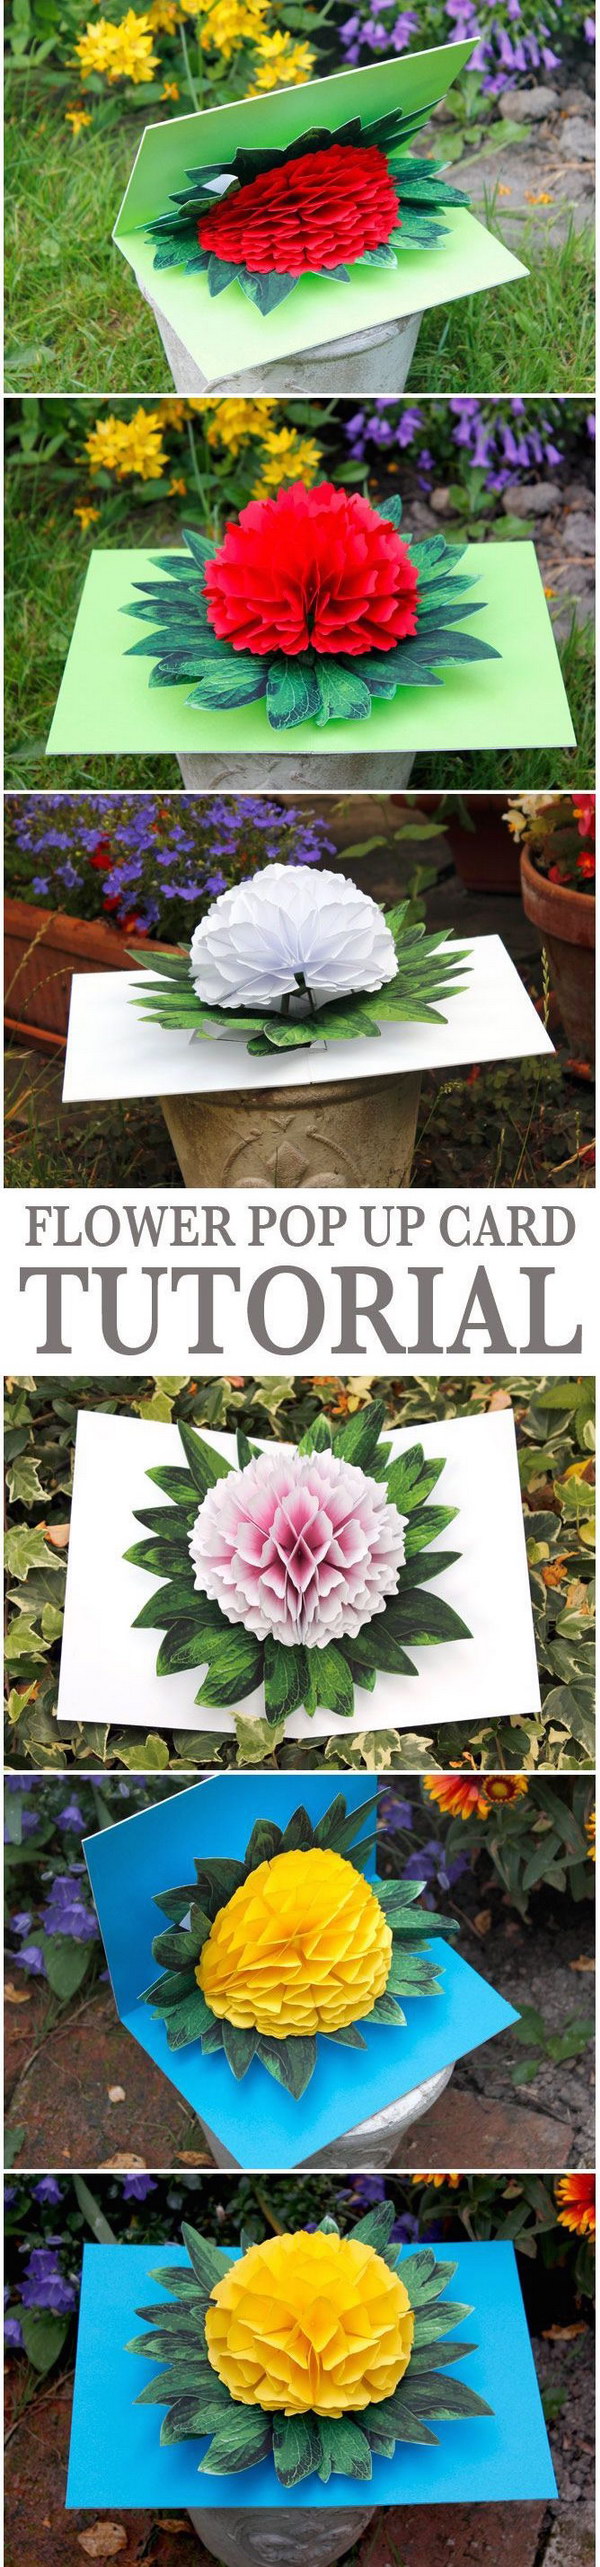 Flower Pop-up Card. 